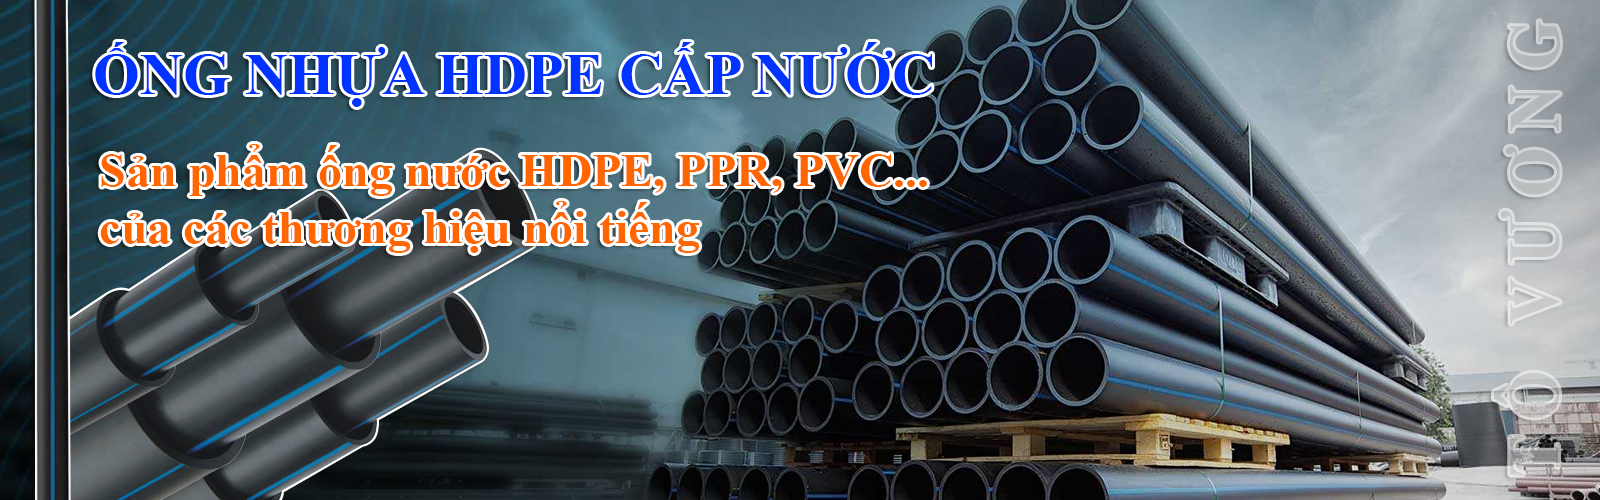 Sản phẩm ống nước HDPE, PPR, PVC... của các thương hiệu nổi tiế